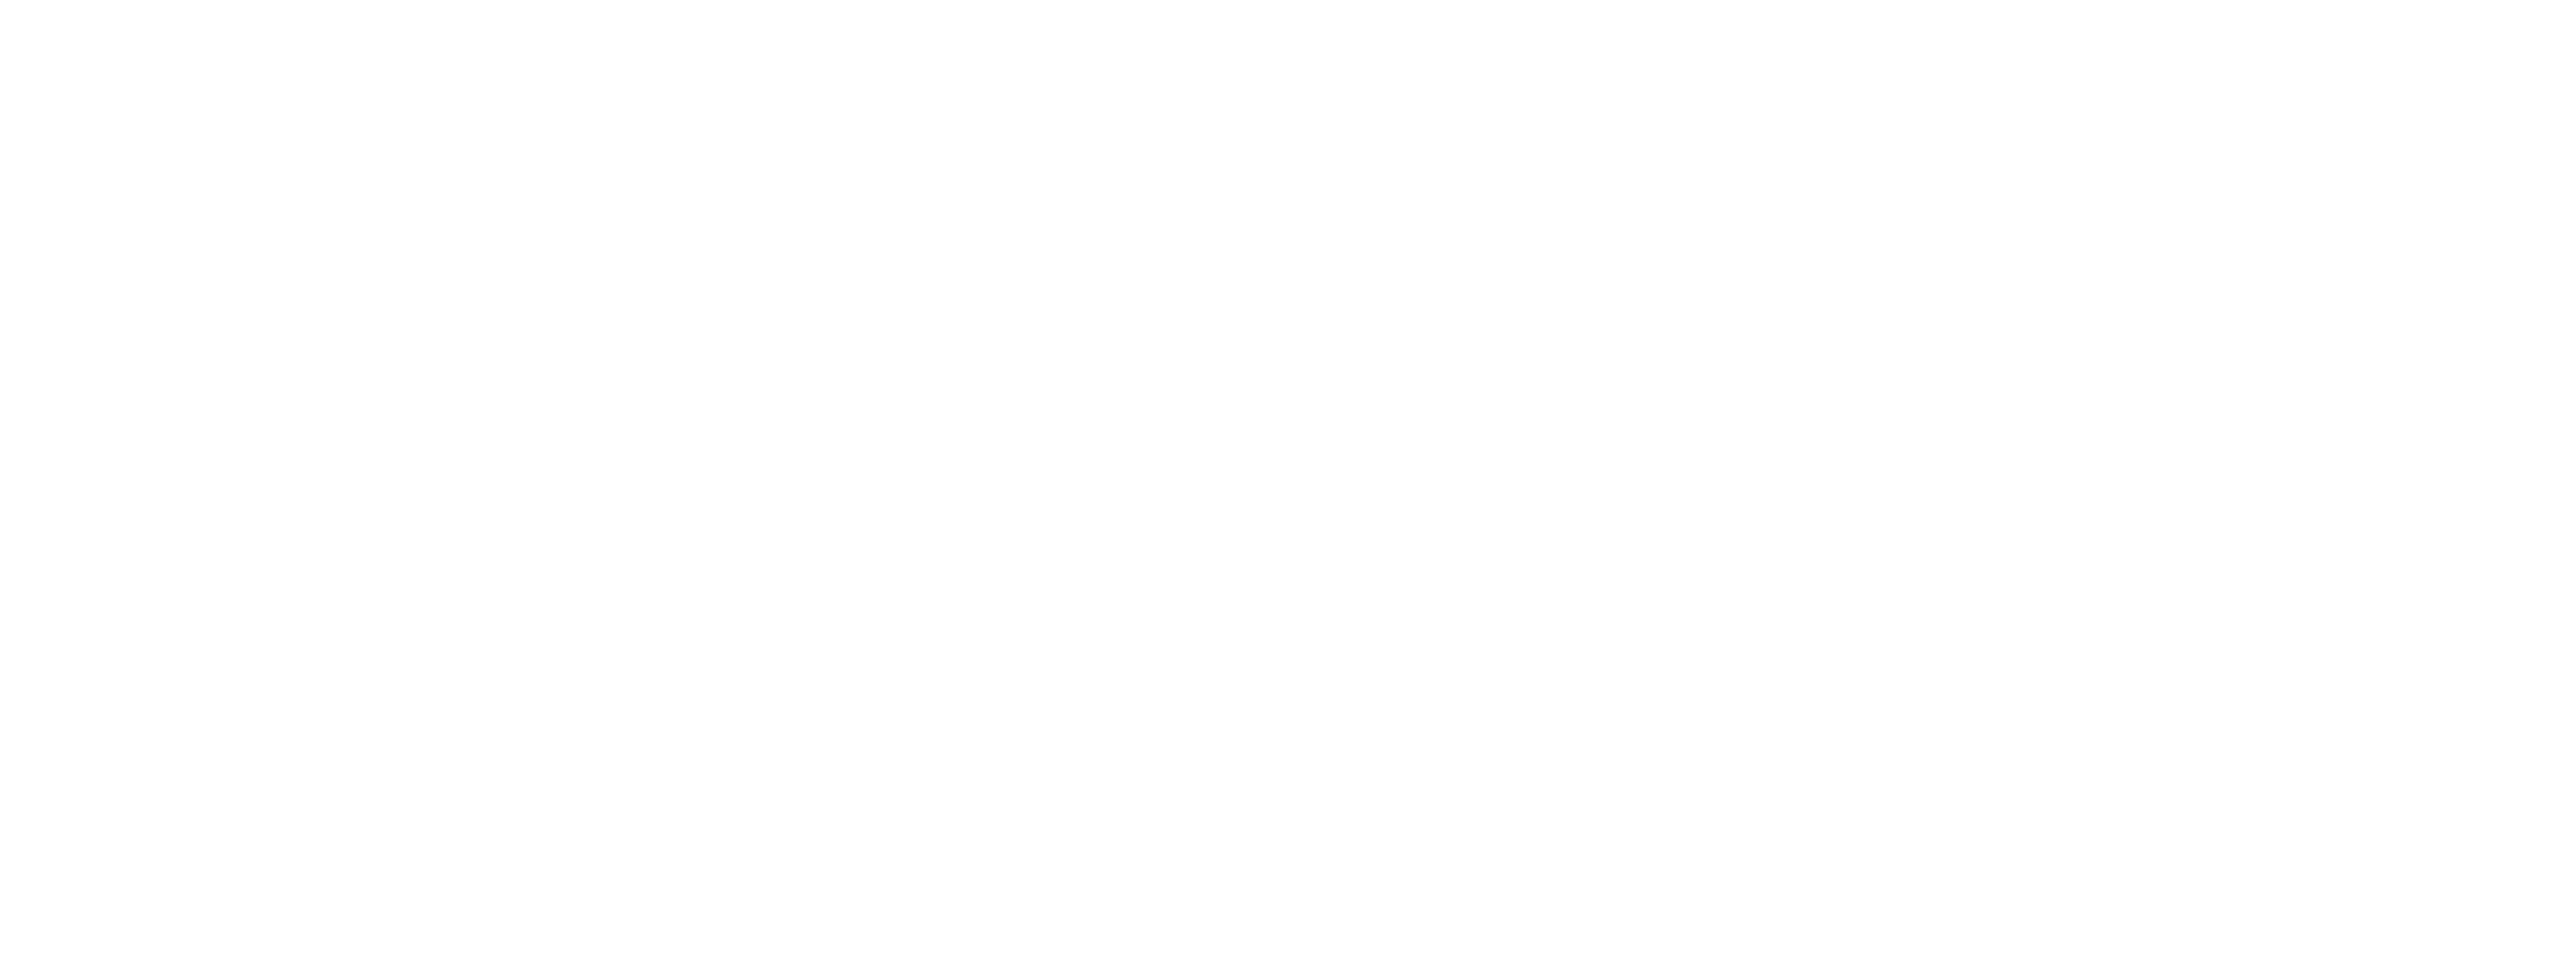 3eye tech logo